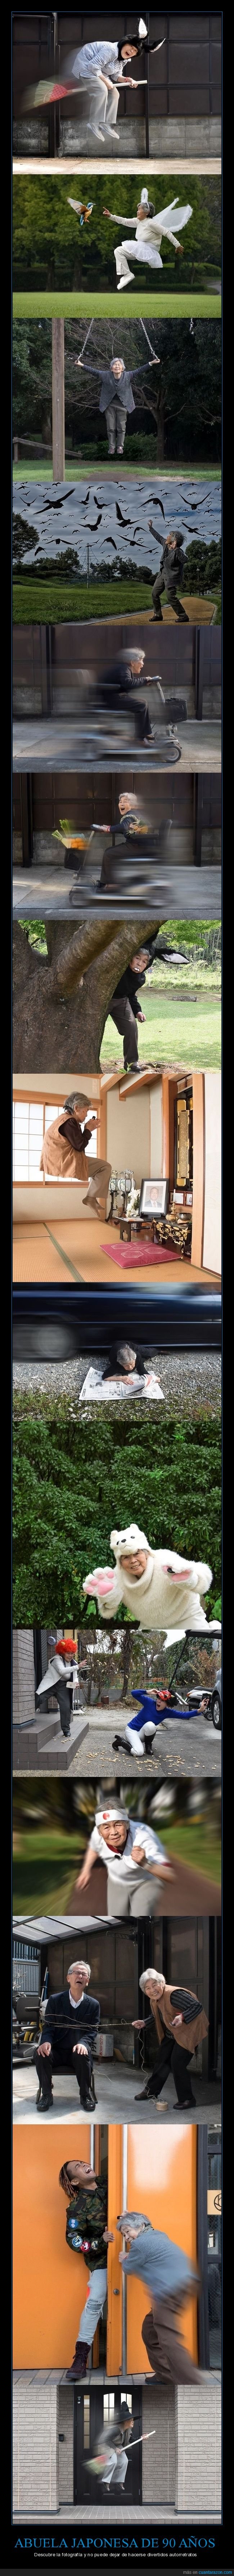 abuela,japonesa,90 años,fotografía